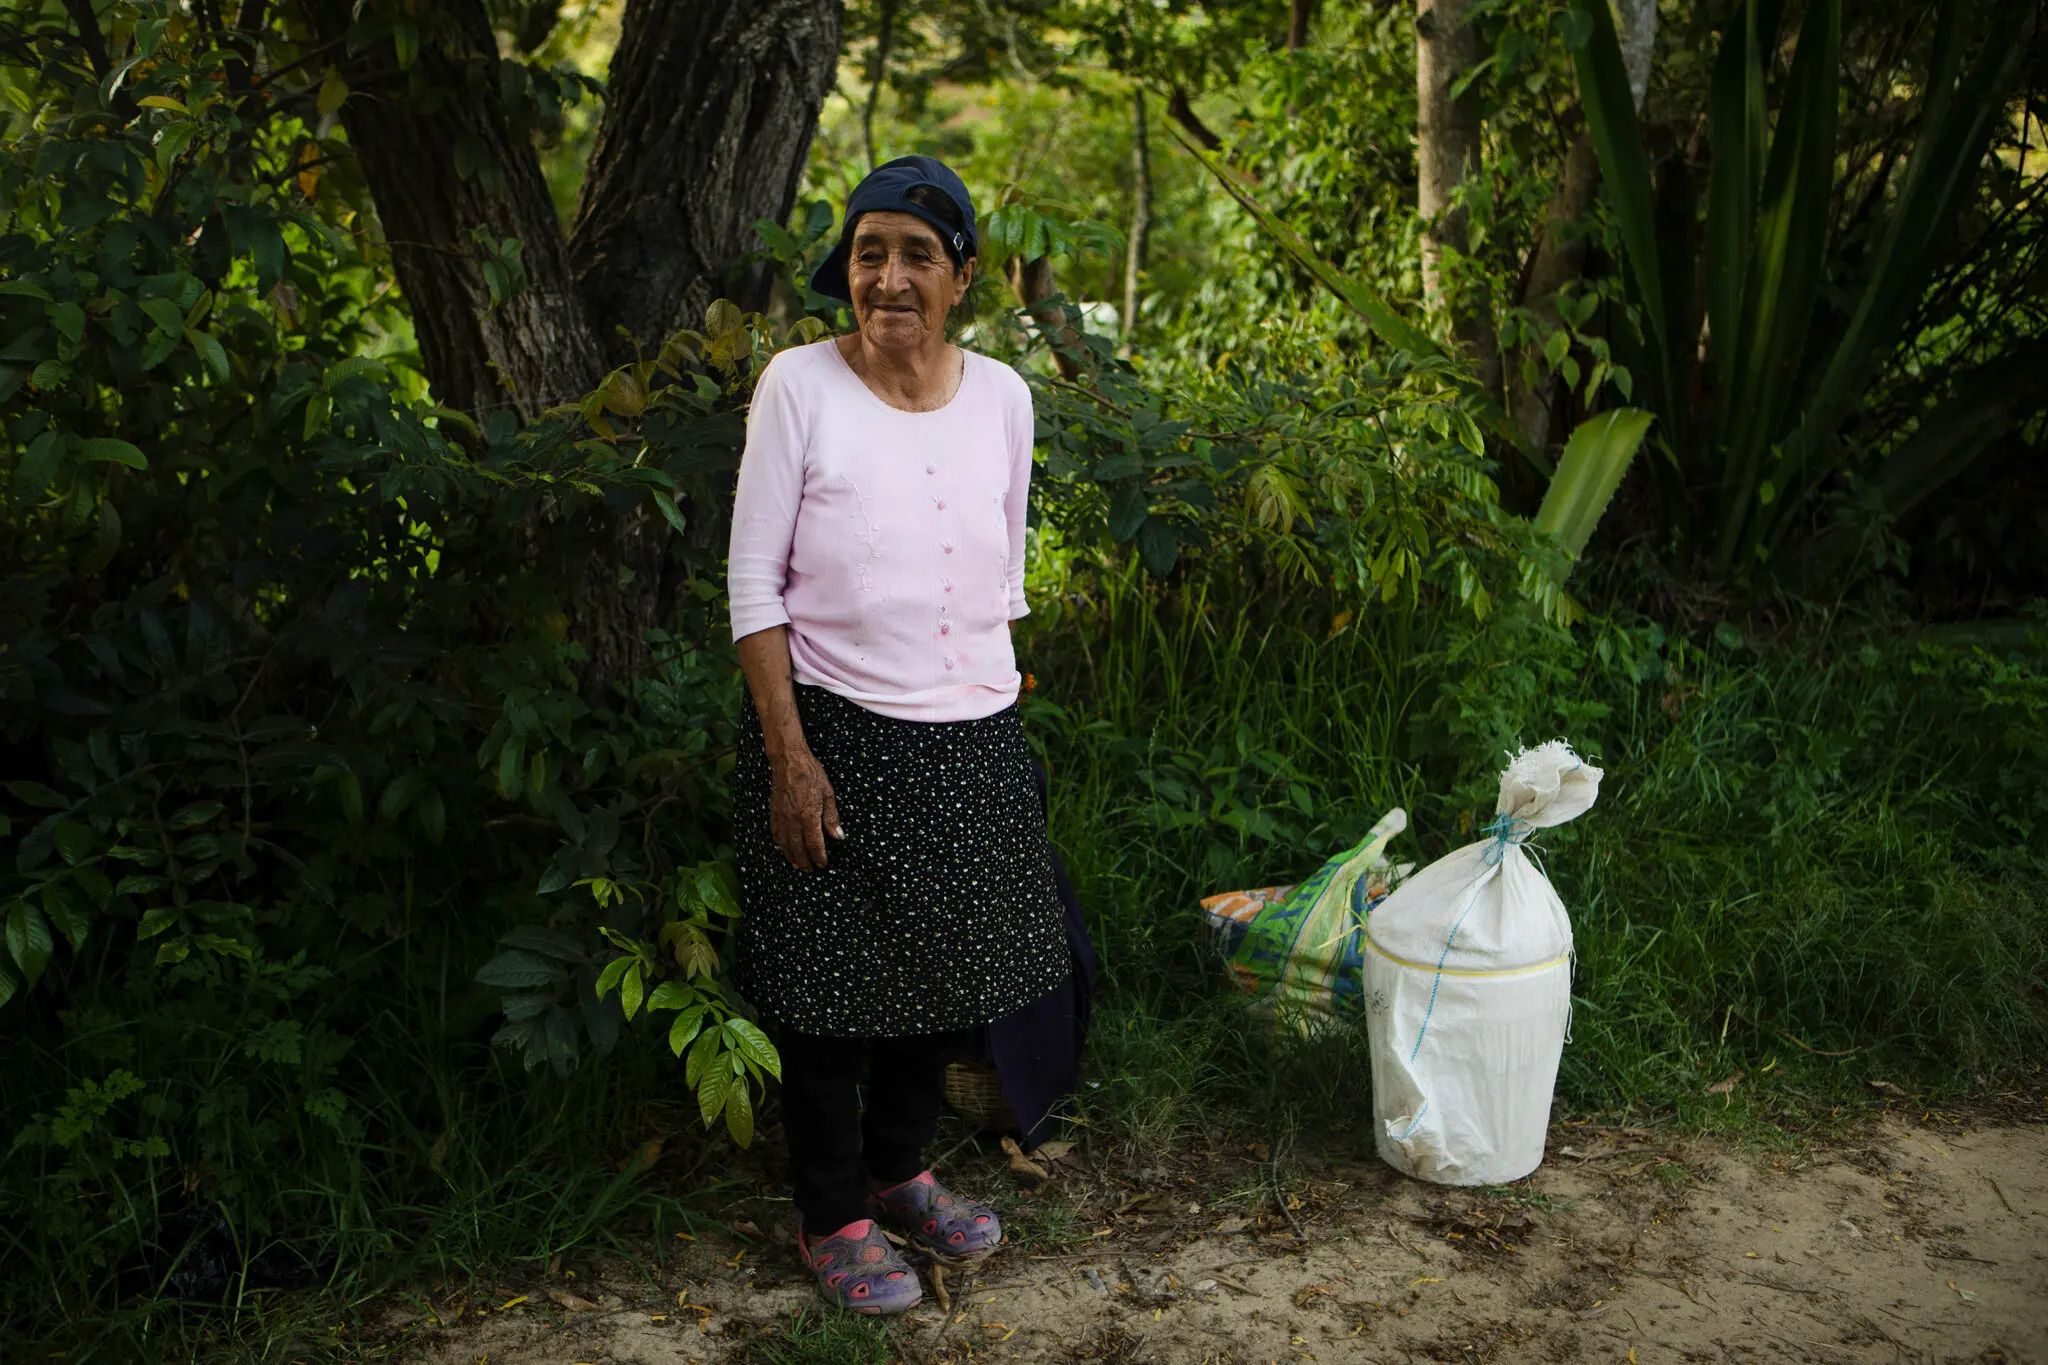 Alicia Delgado, de 68 años, mientras compraba una bolsa de guayaba en Chota, una provincia rural. Mucha gente dice que el precio de los productos ha subido y eso dificulta abastecerse | Marco Garro para The New York Times